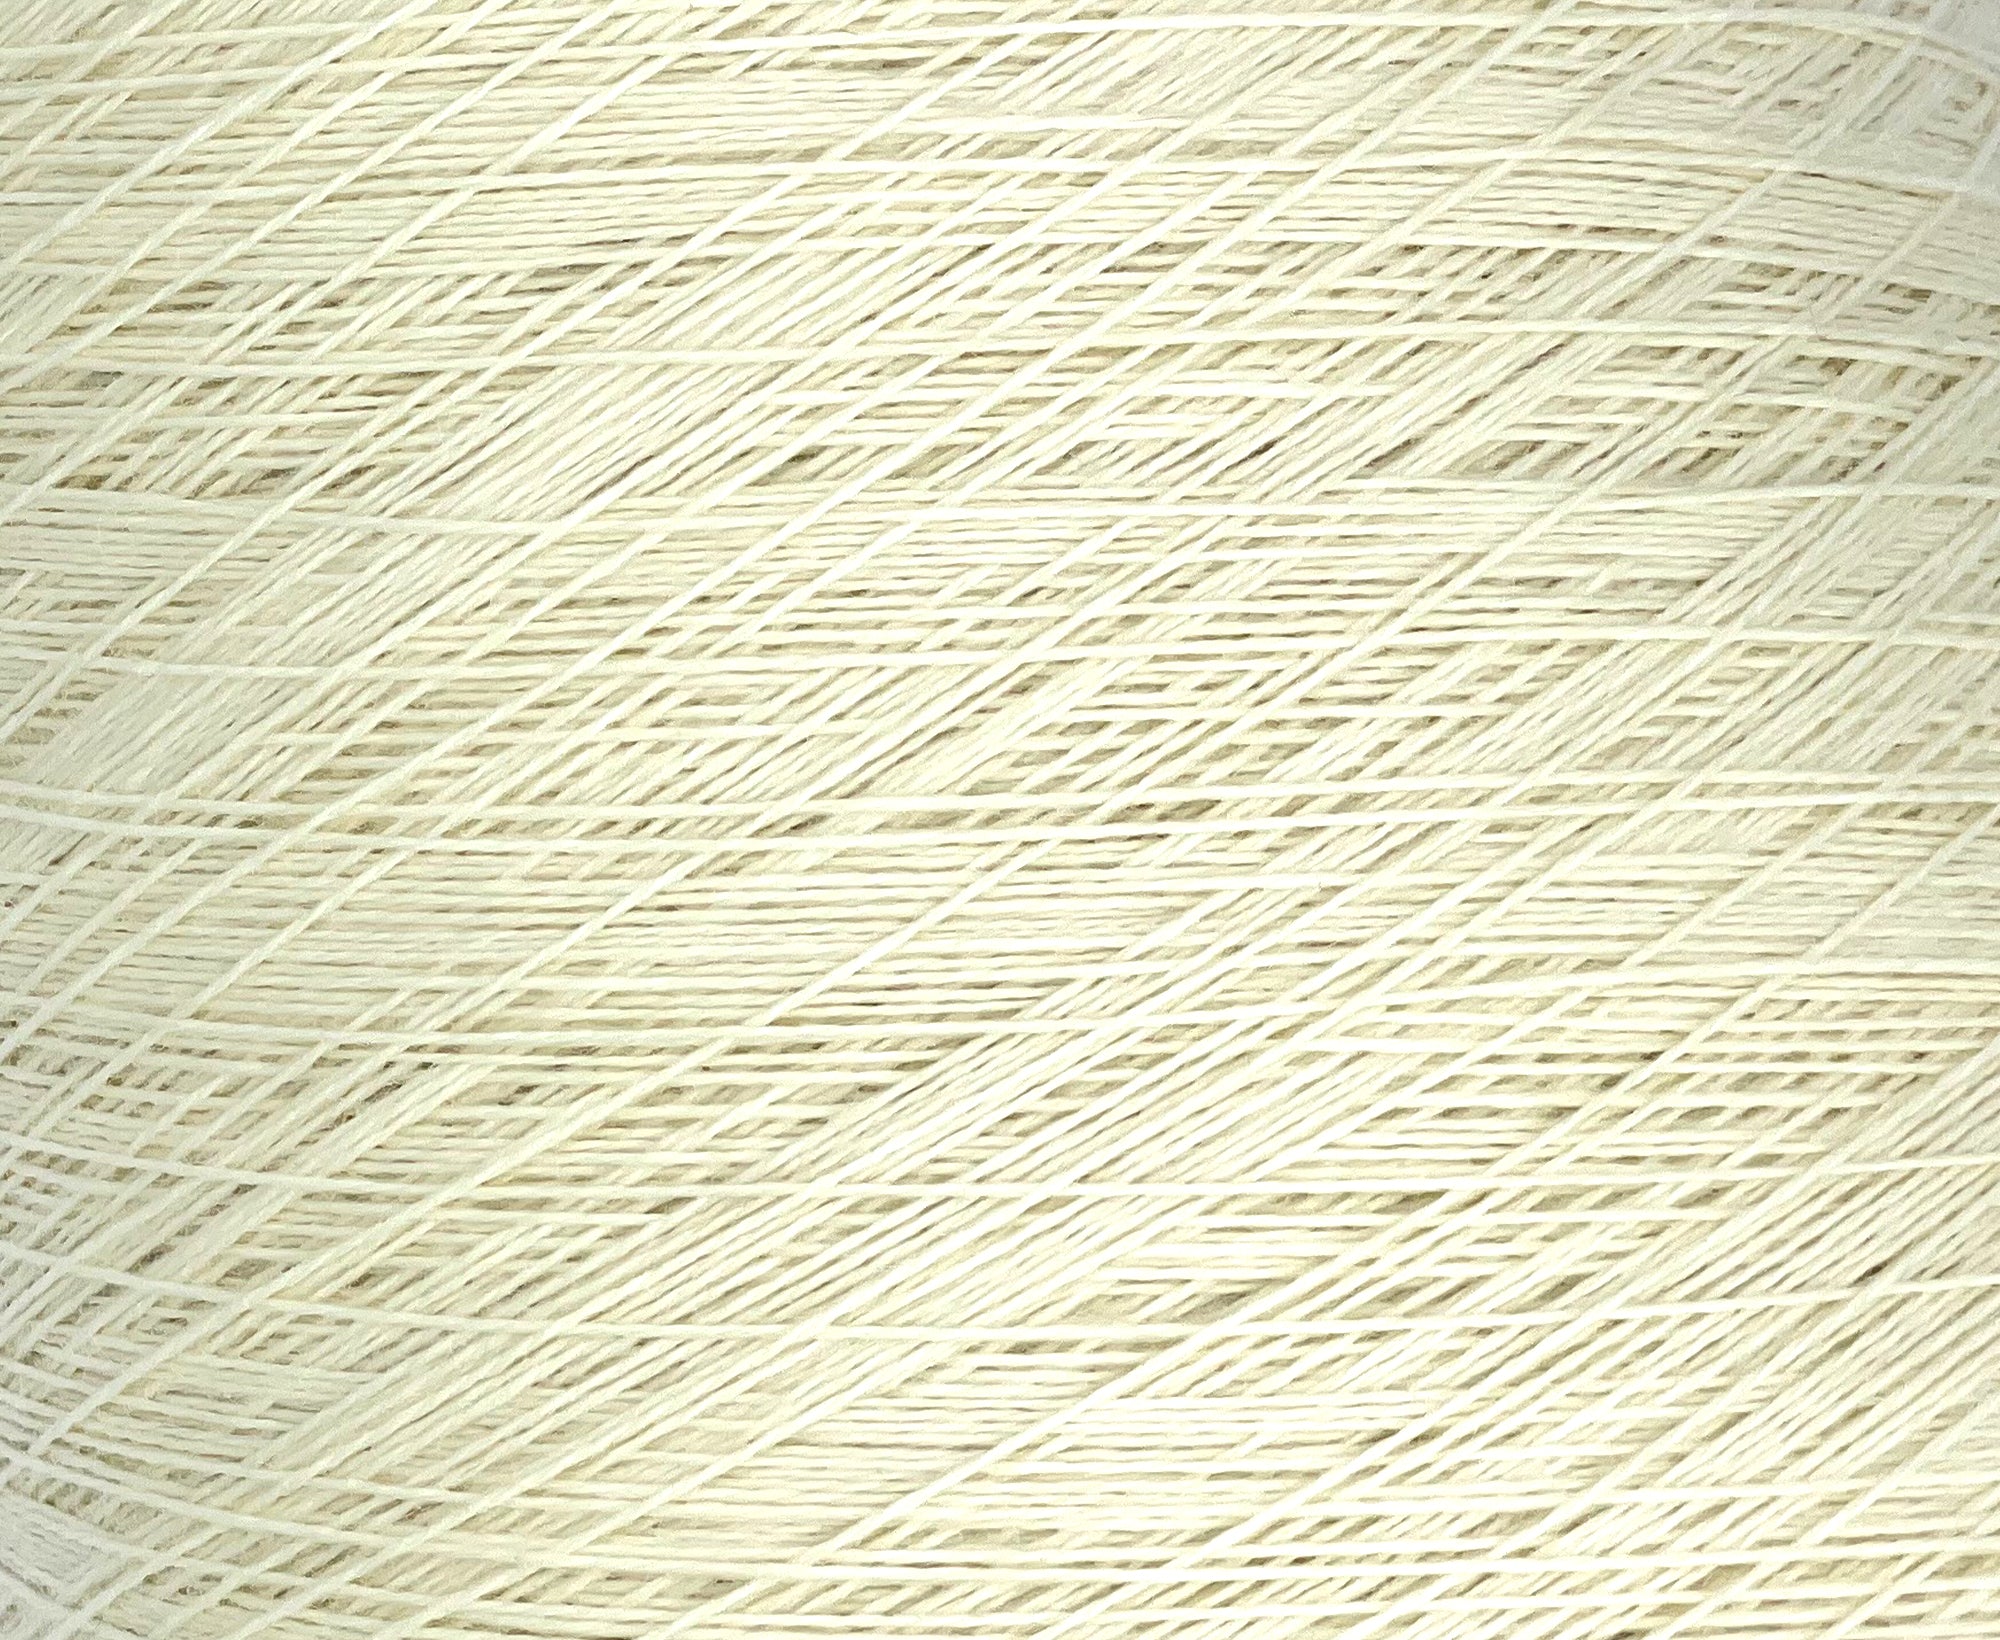 Ivory Lace Machine Knitting Yarn